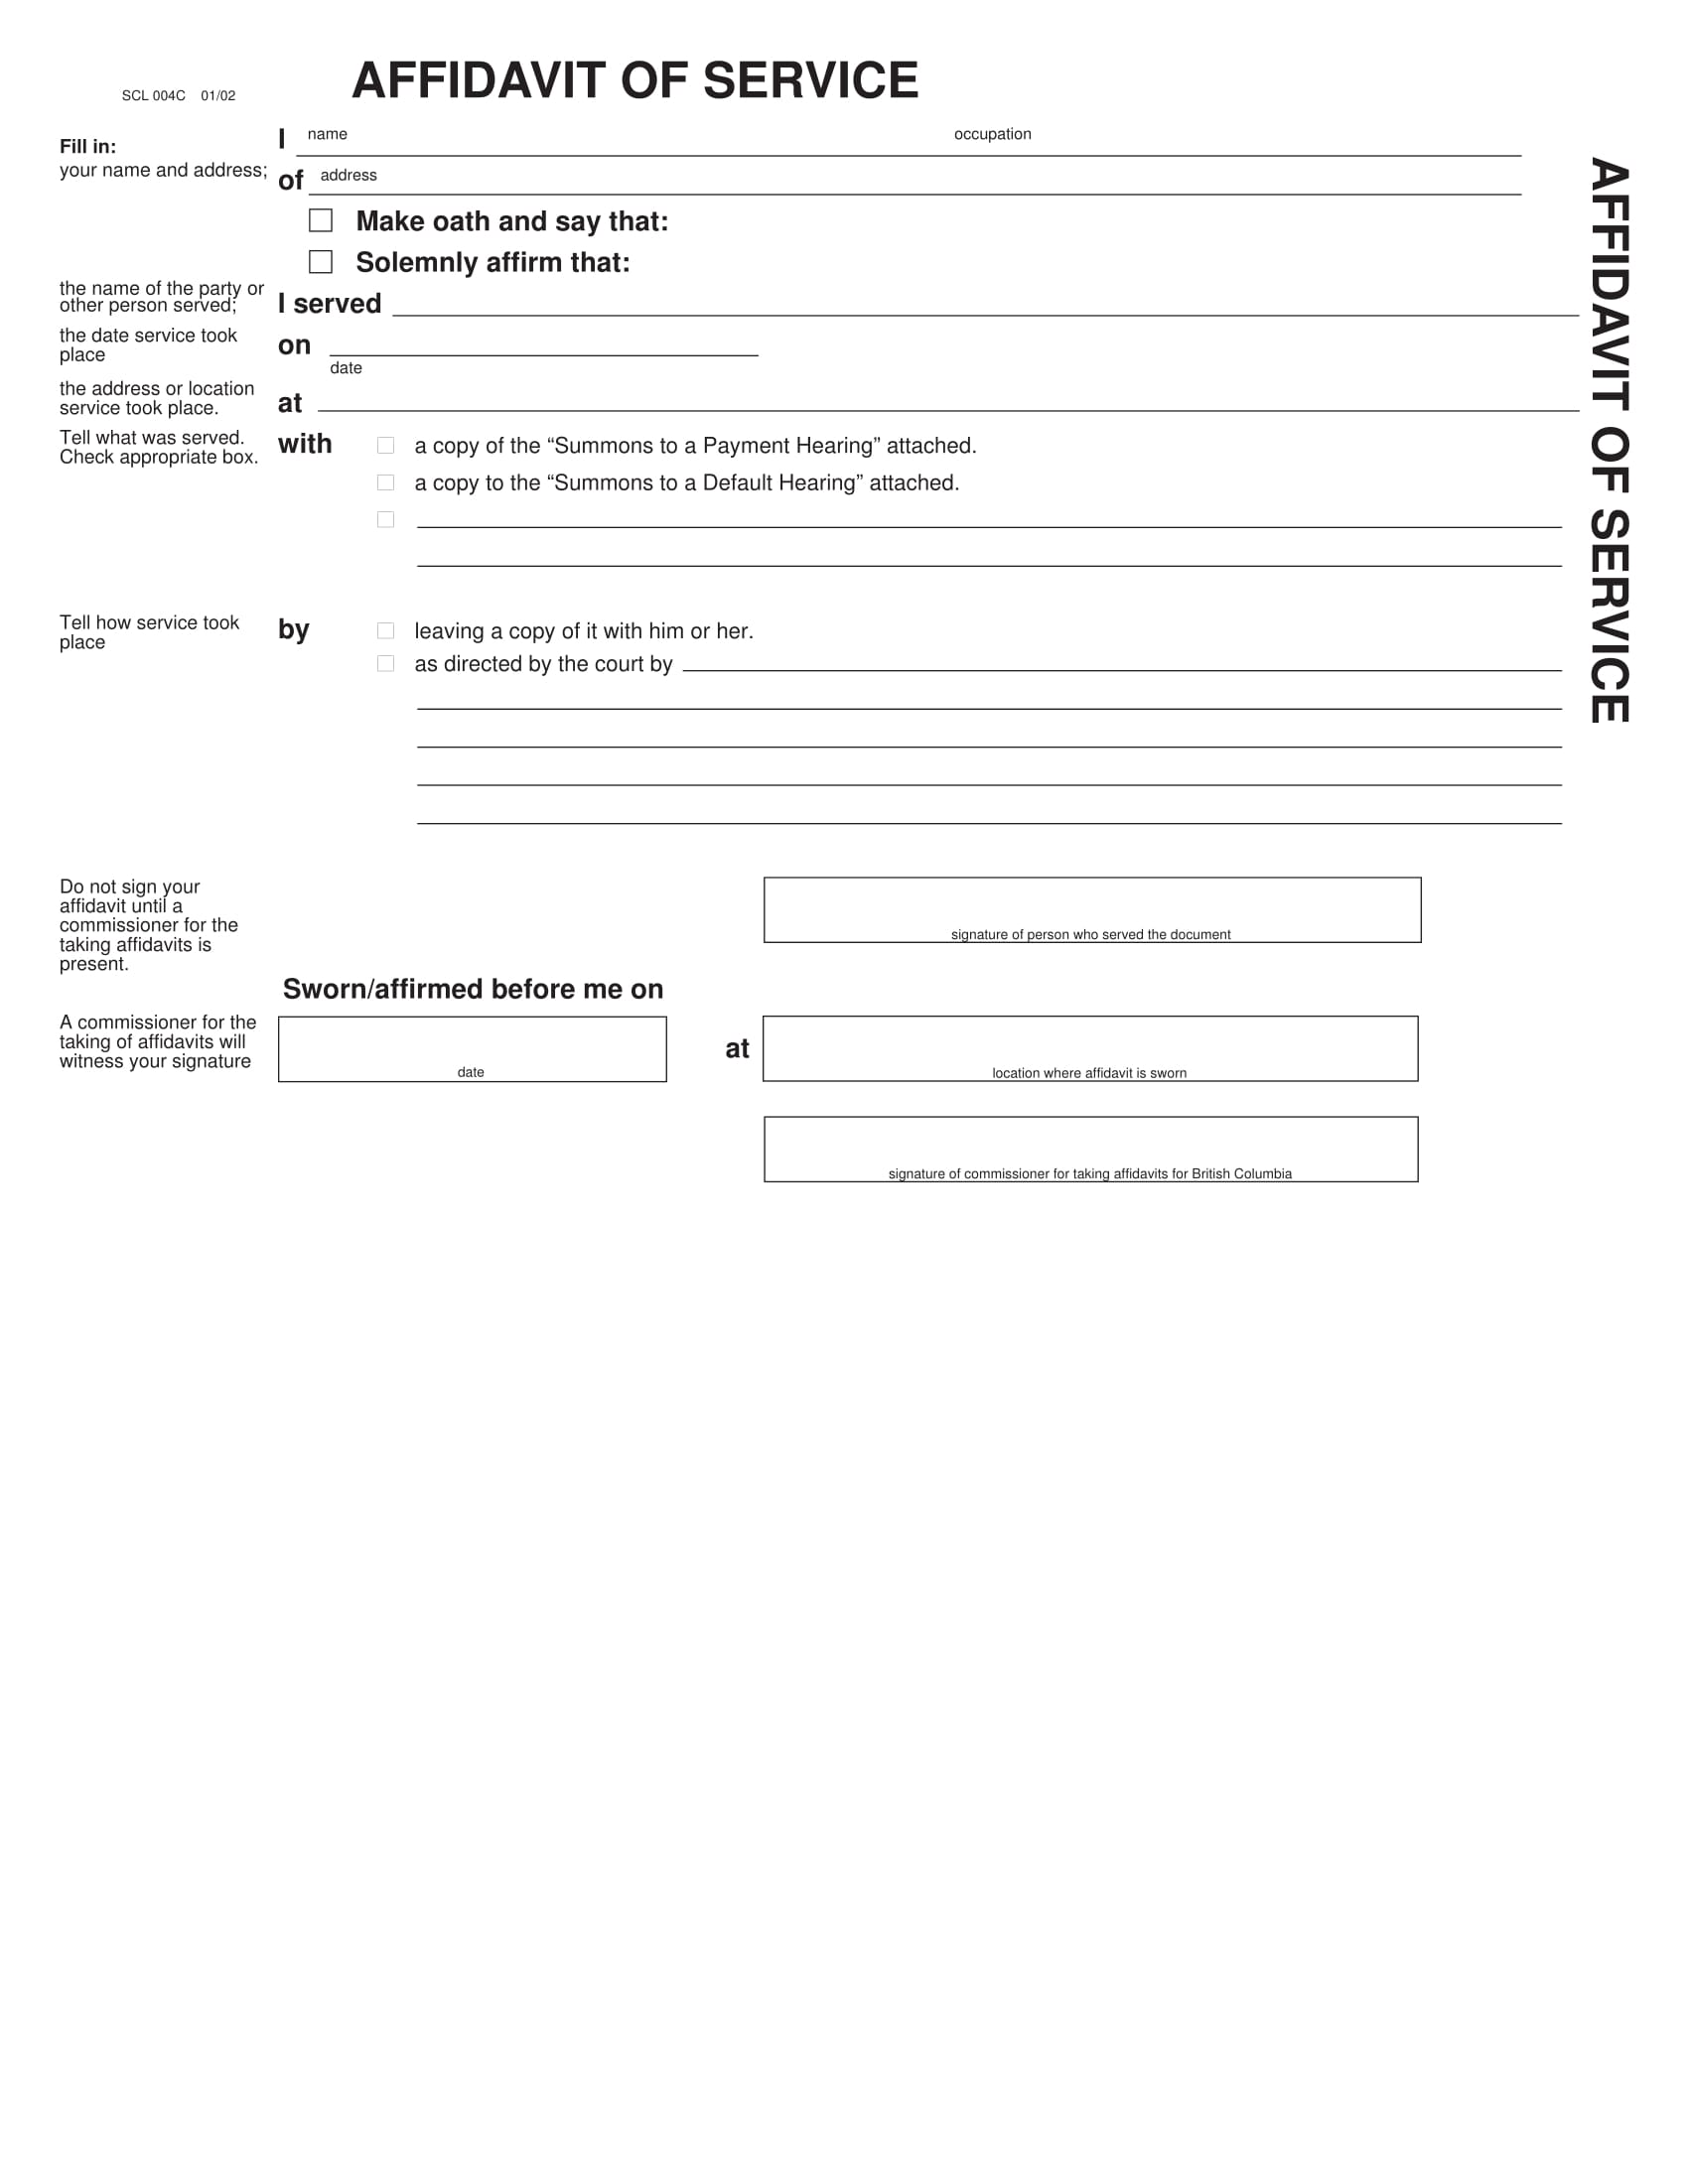 blank affidavit of service form 1